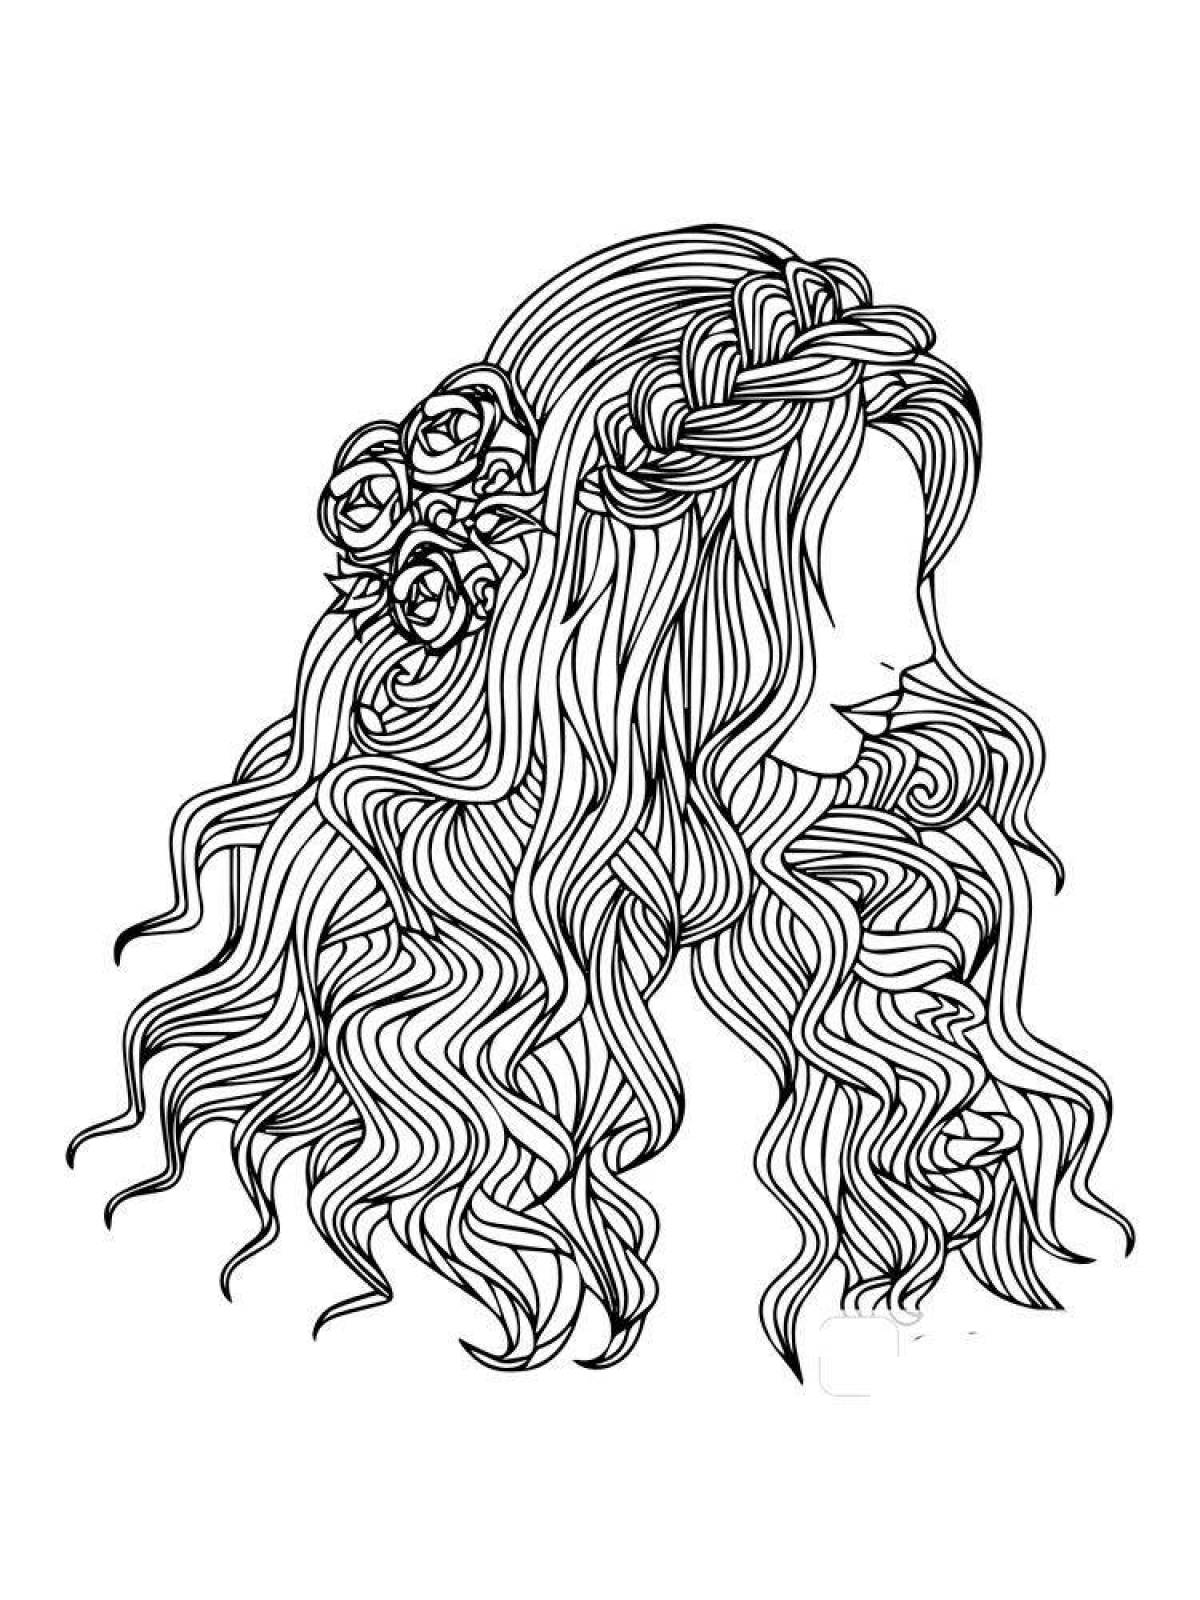 Буйная раскраска девочки с длинными волосами